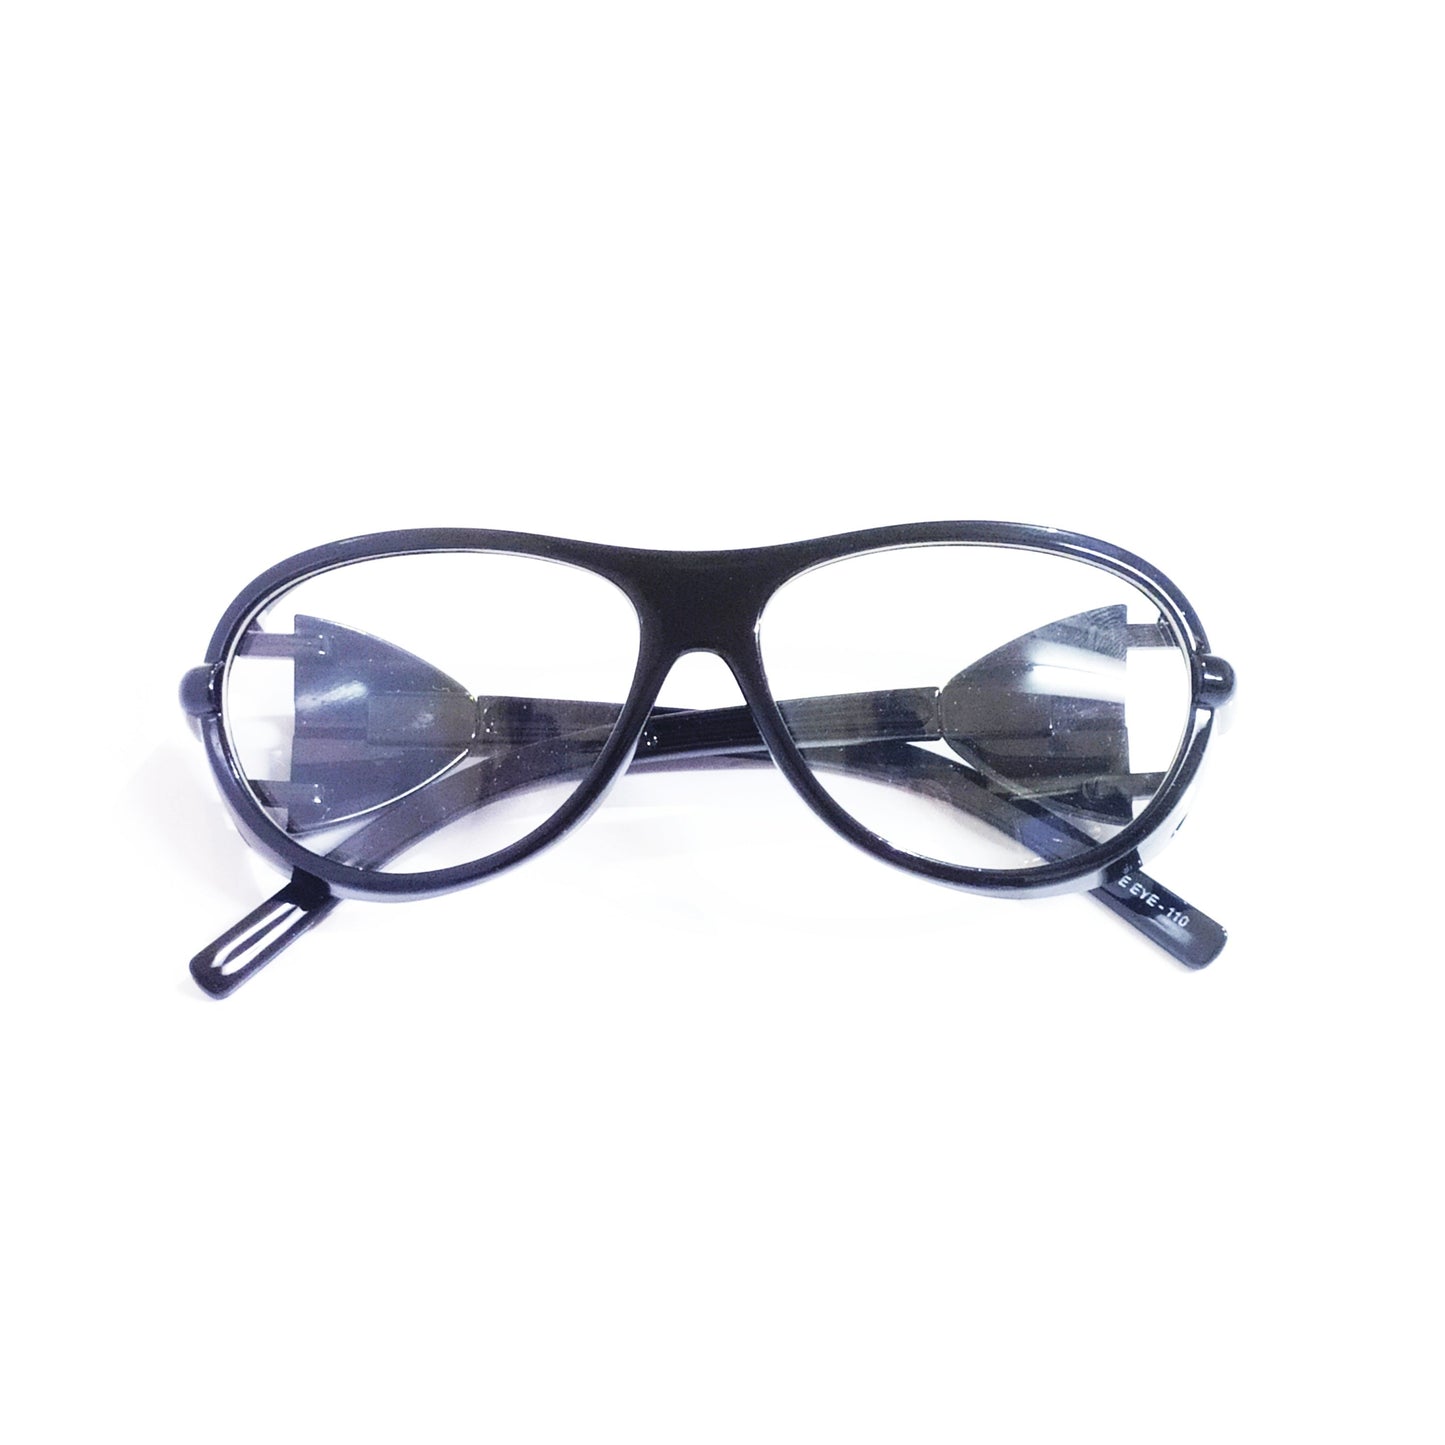 EYESafety Black Frame Prescription Safety Glasses